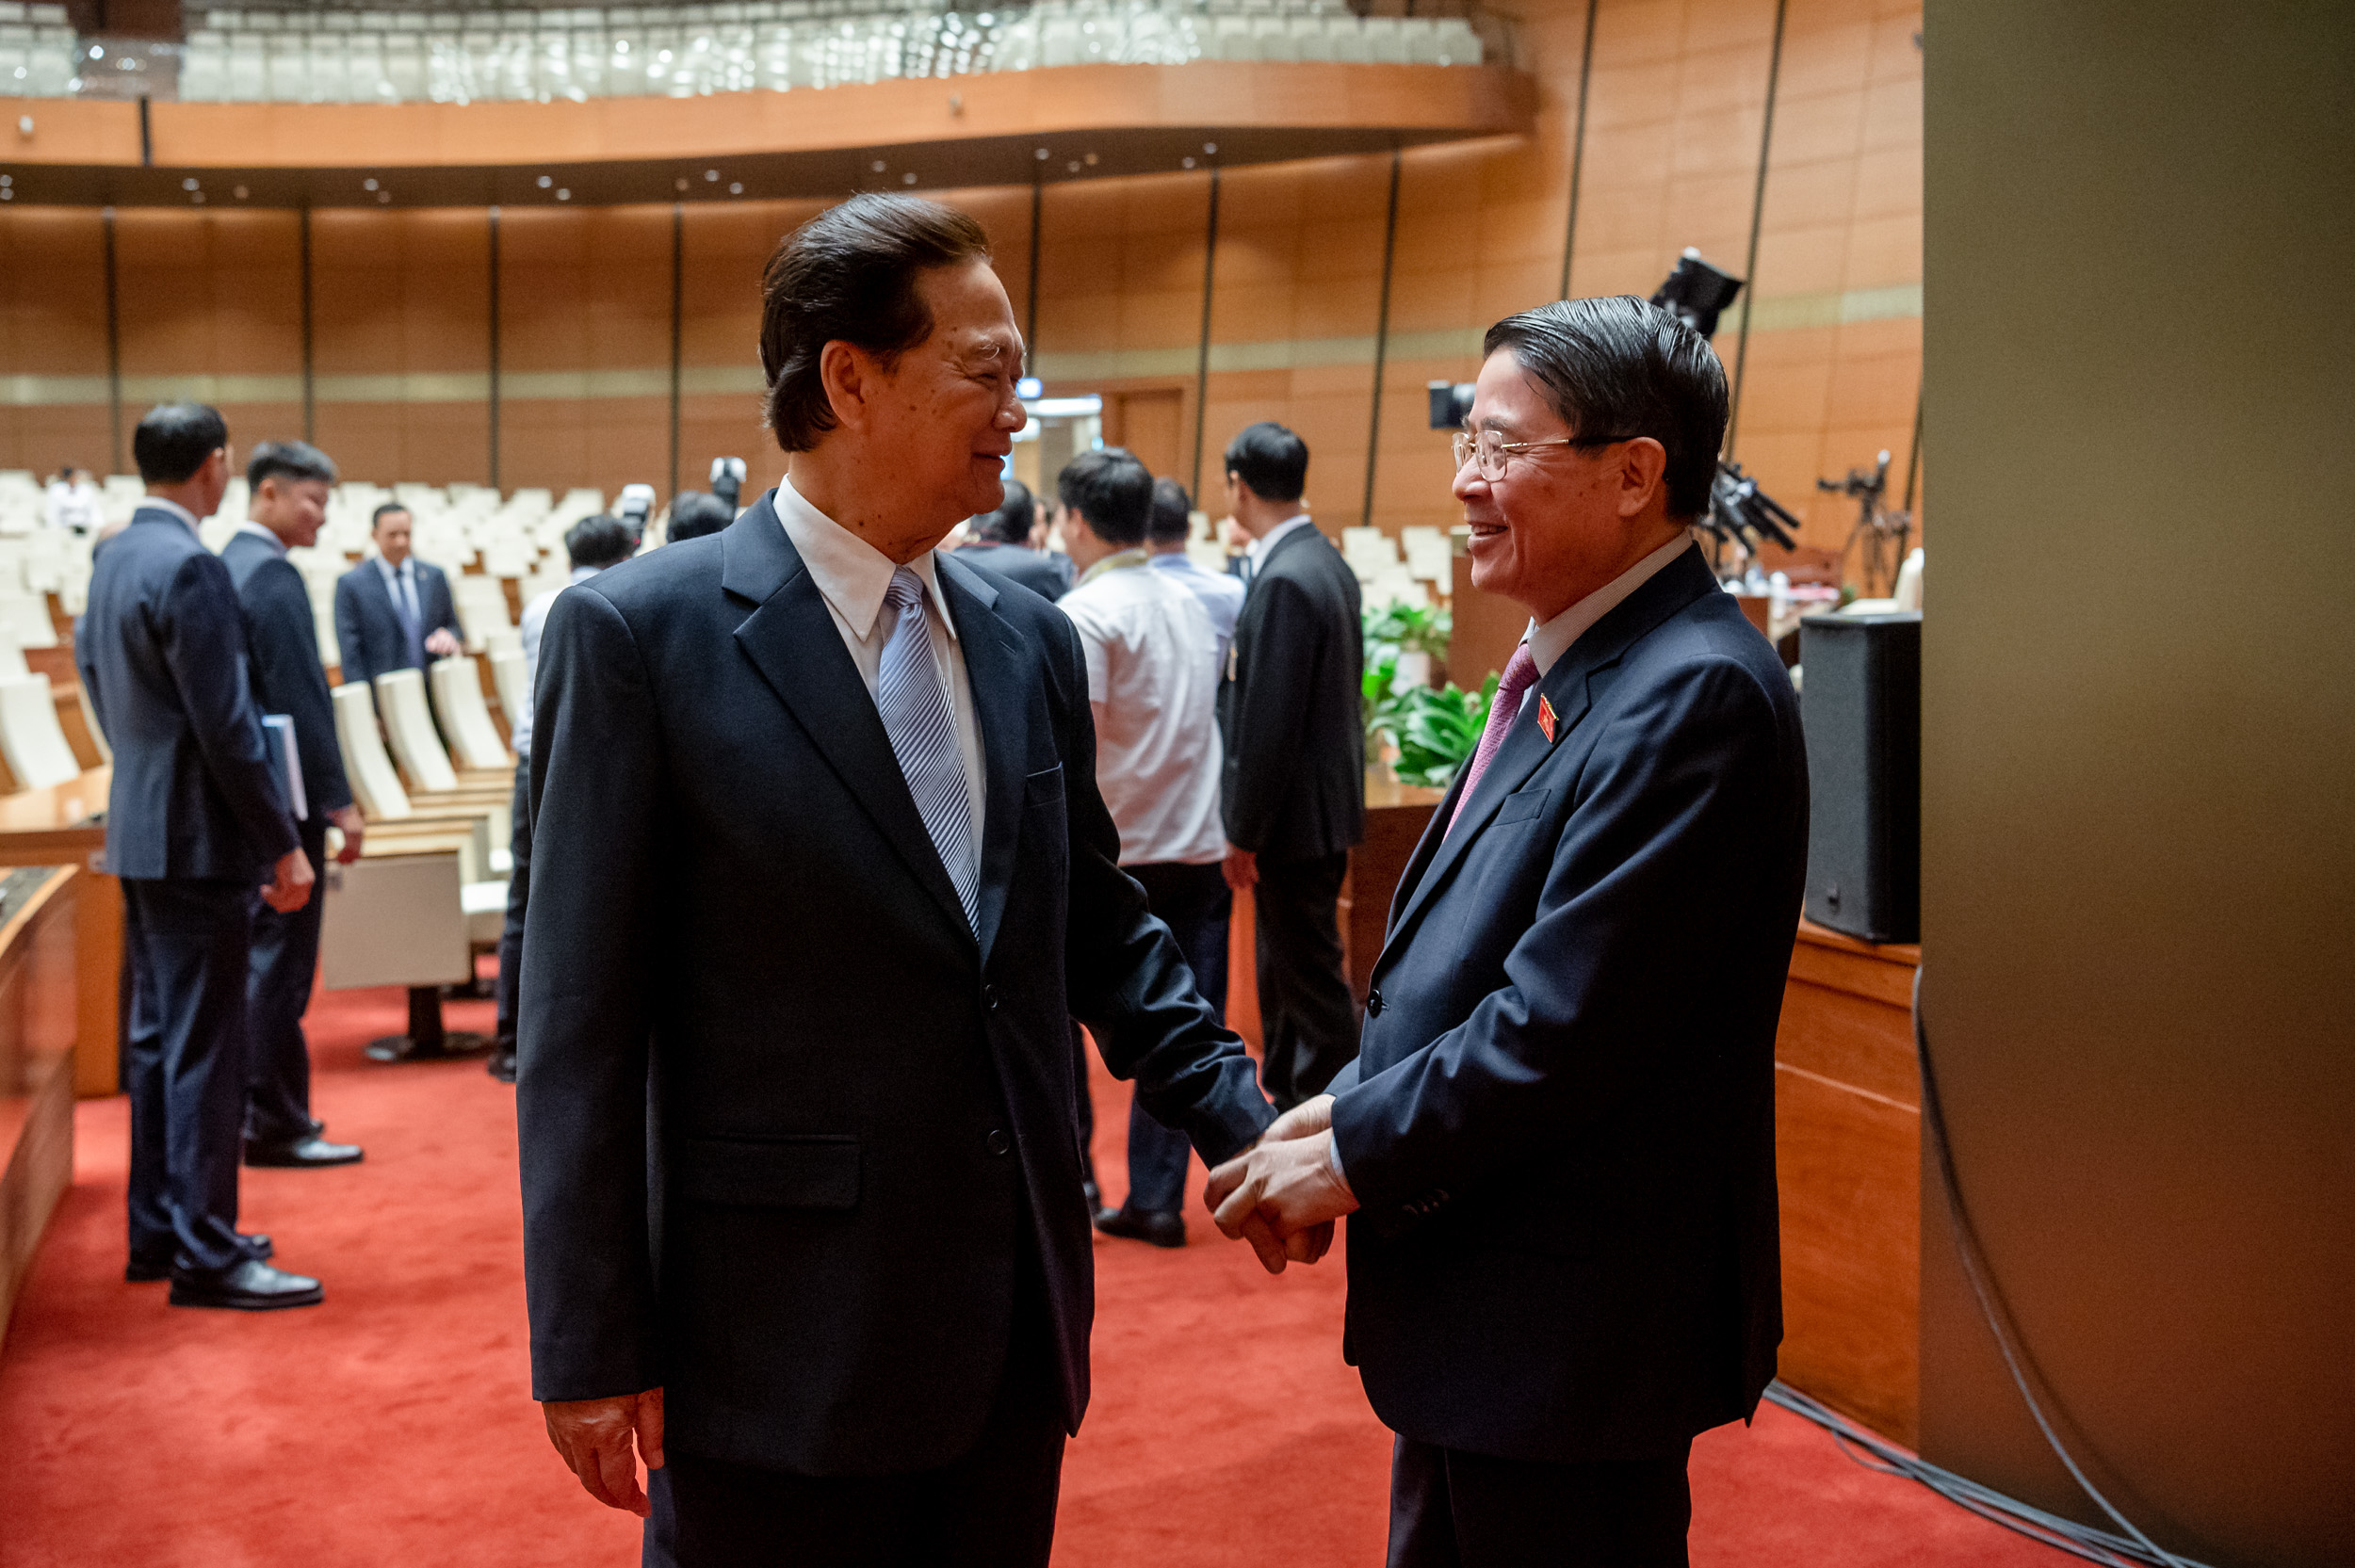 Phó Chủ tịch Quốc hội Nguyễn Đức Hải và nguyên Thủ tướng Chính phủ Nguyễn Tấn Dũng bên lề phiên họp